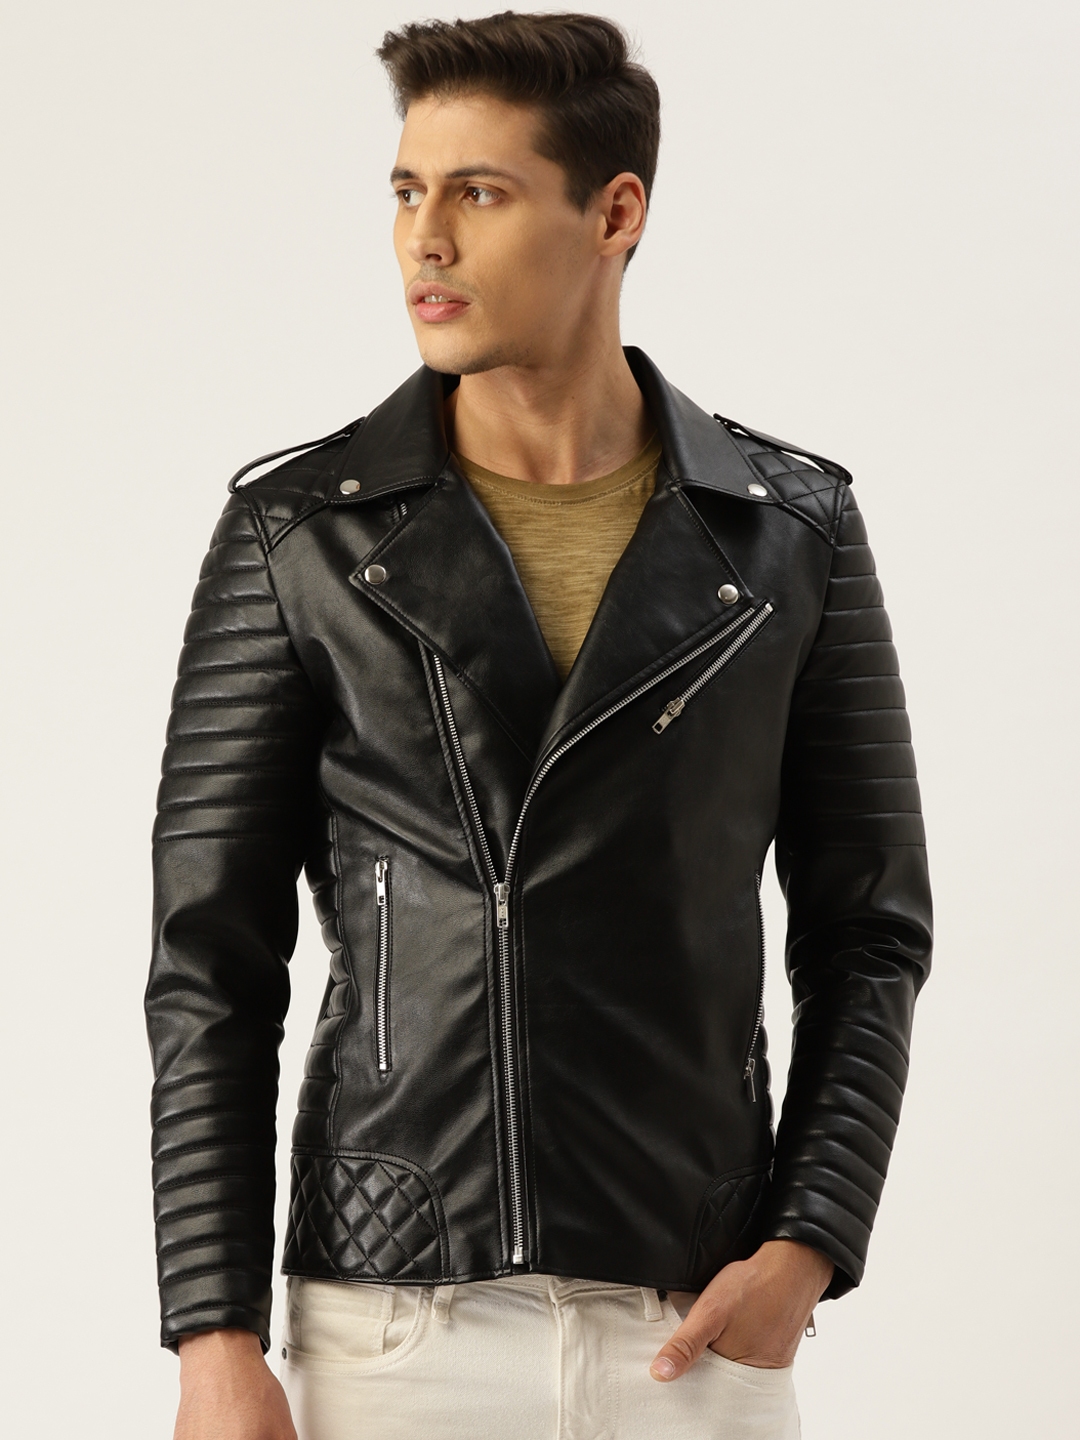 Leather jacket